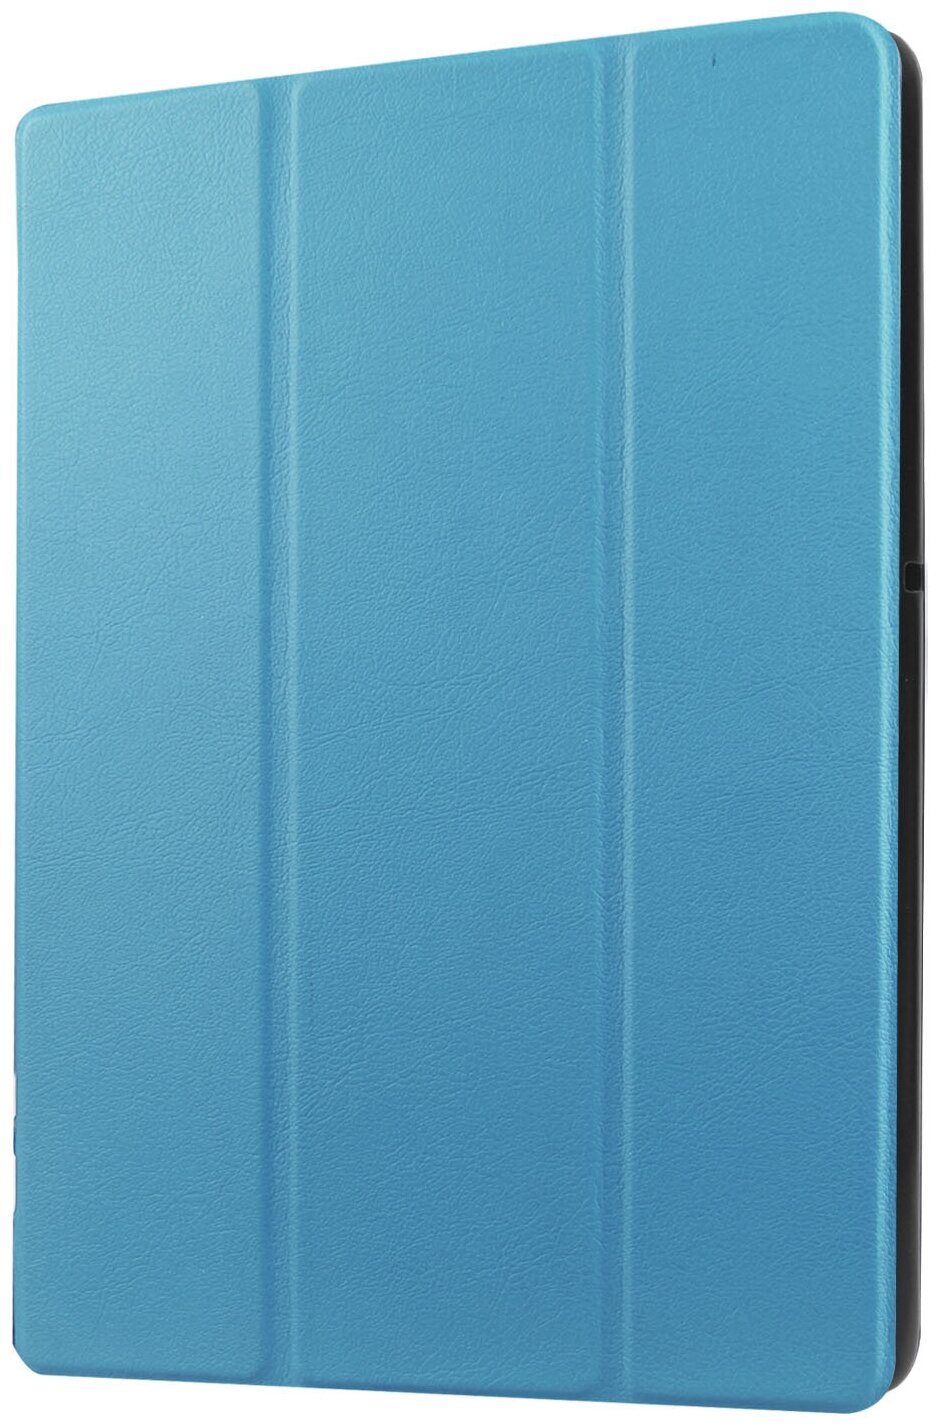 Чехол-обложка MyPads для Lenovo Tab 4 8 TB-8504X/N/F тонкий умный кожаный на пластиковой основе с трансформацией в подставку голубой